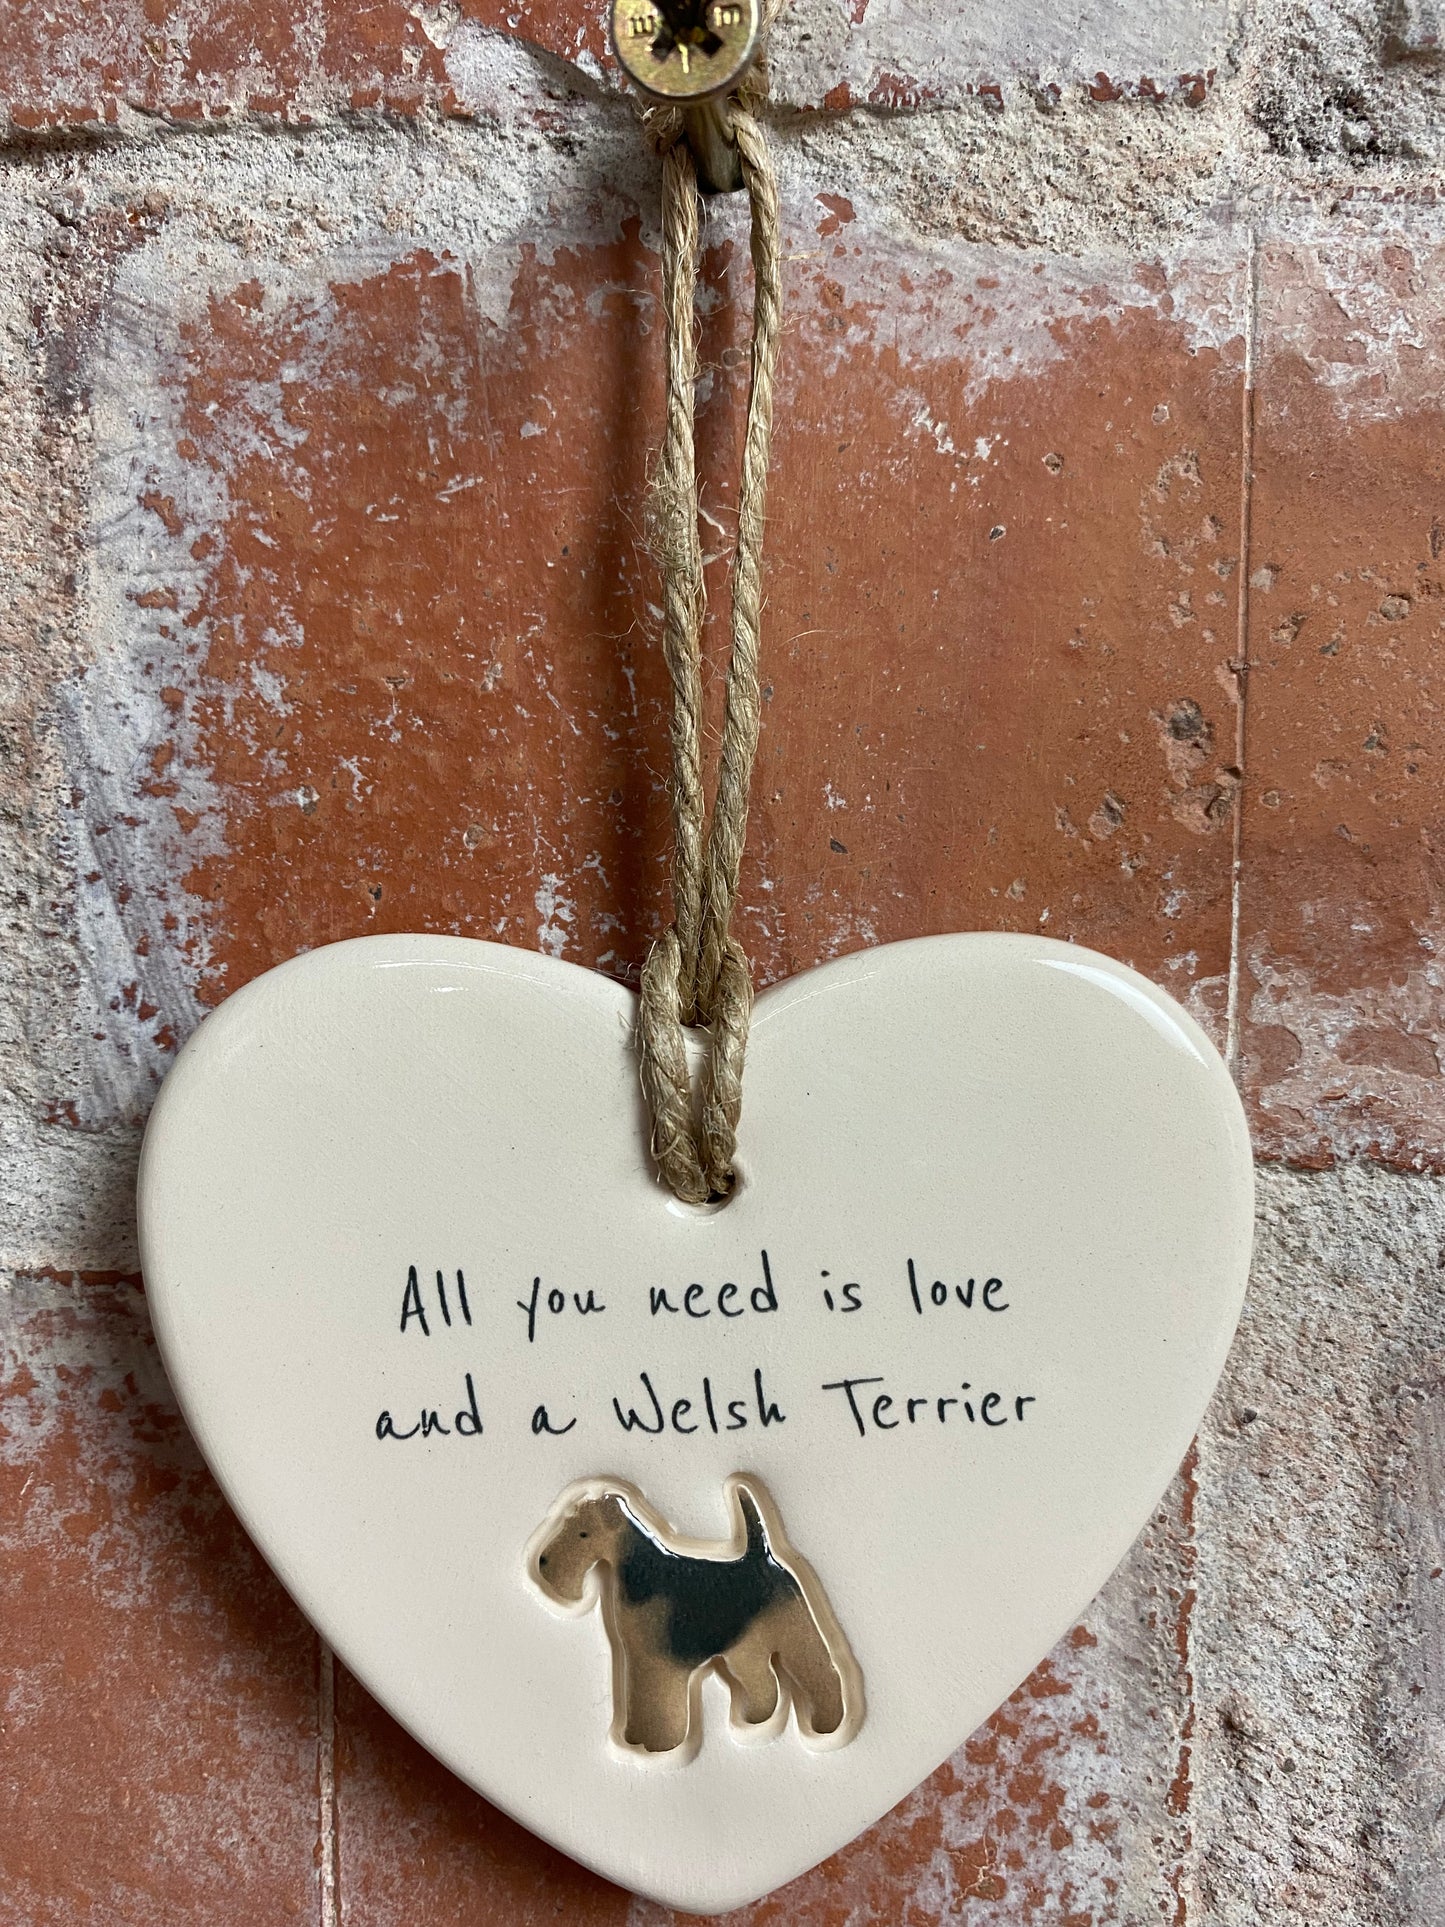 Welsh Terrier ceramic heart